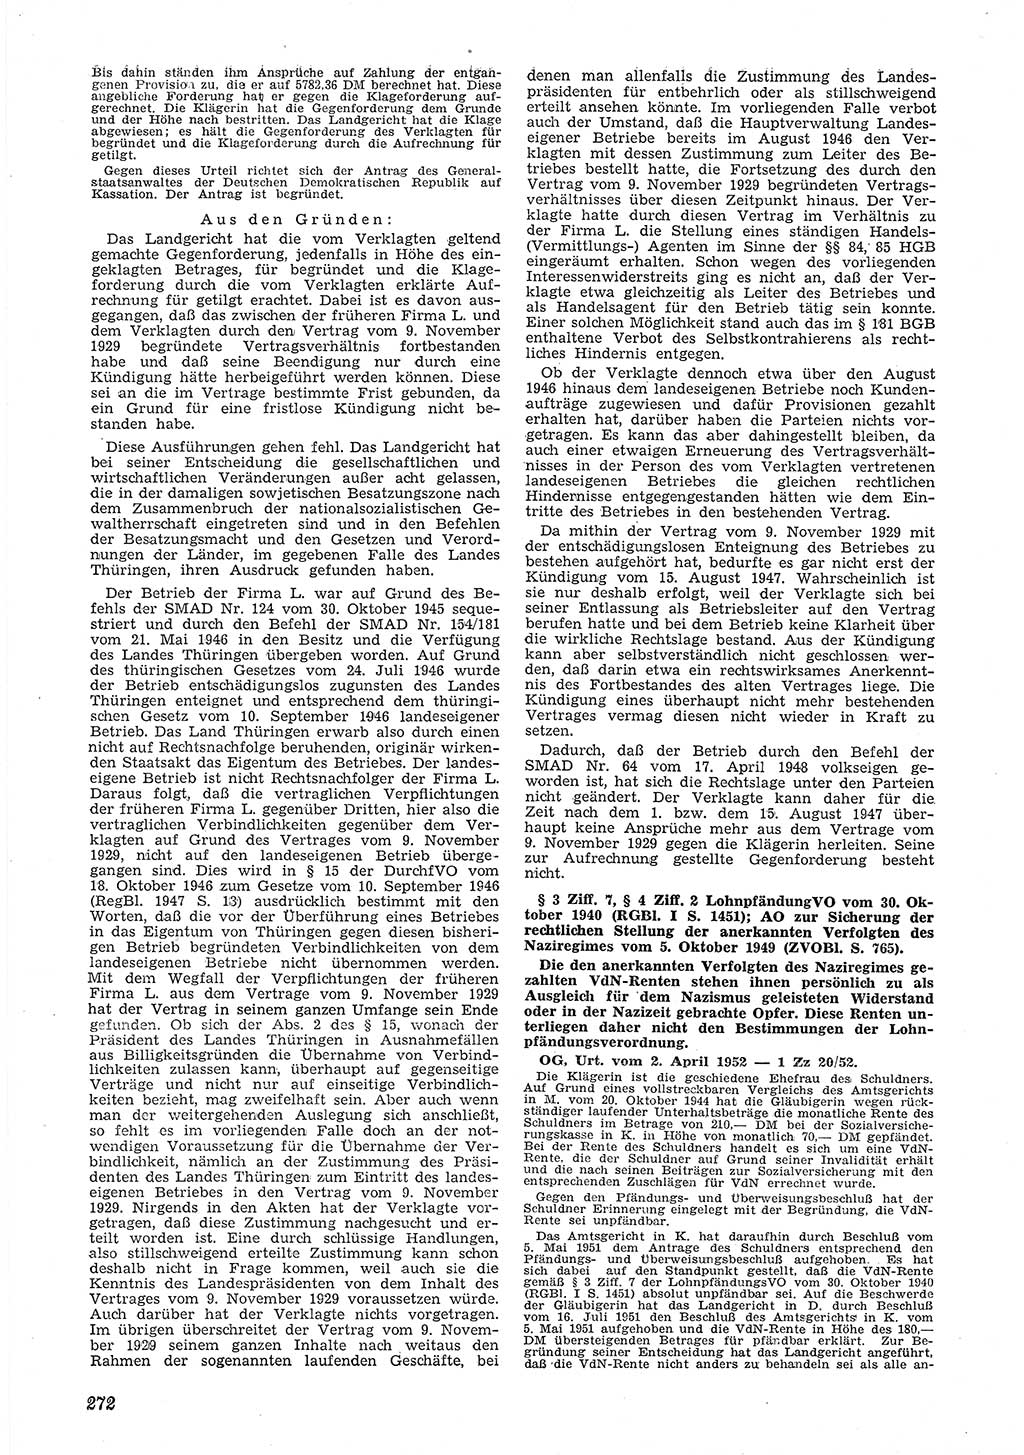 Neue Justiz (NJ), Zeitschrift für Recht und Rechtswissenschaft [Deutsche Demokratische Republik (DDR)], 6. Jahrgang 1952, Seite 272 (NJ DDR 1952, S. 272)